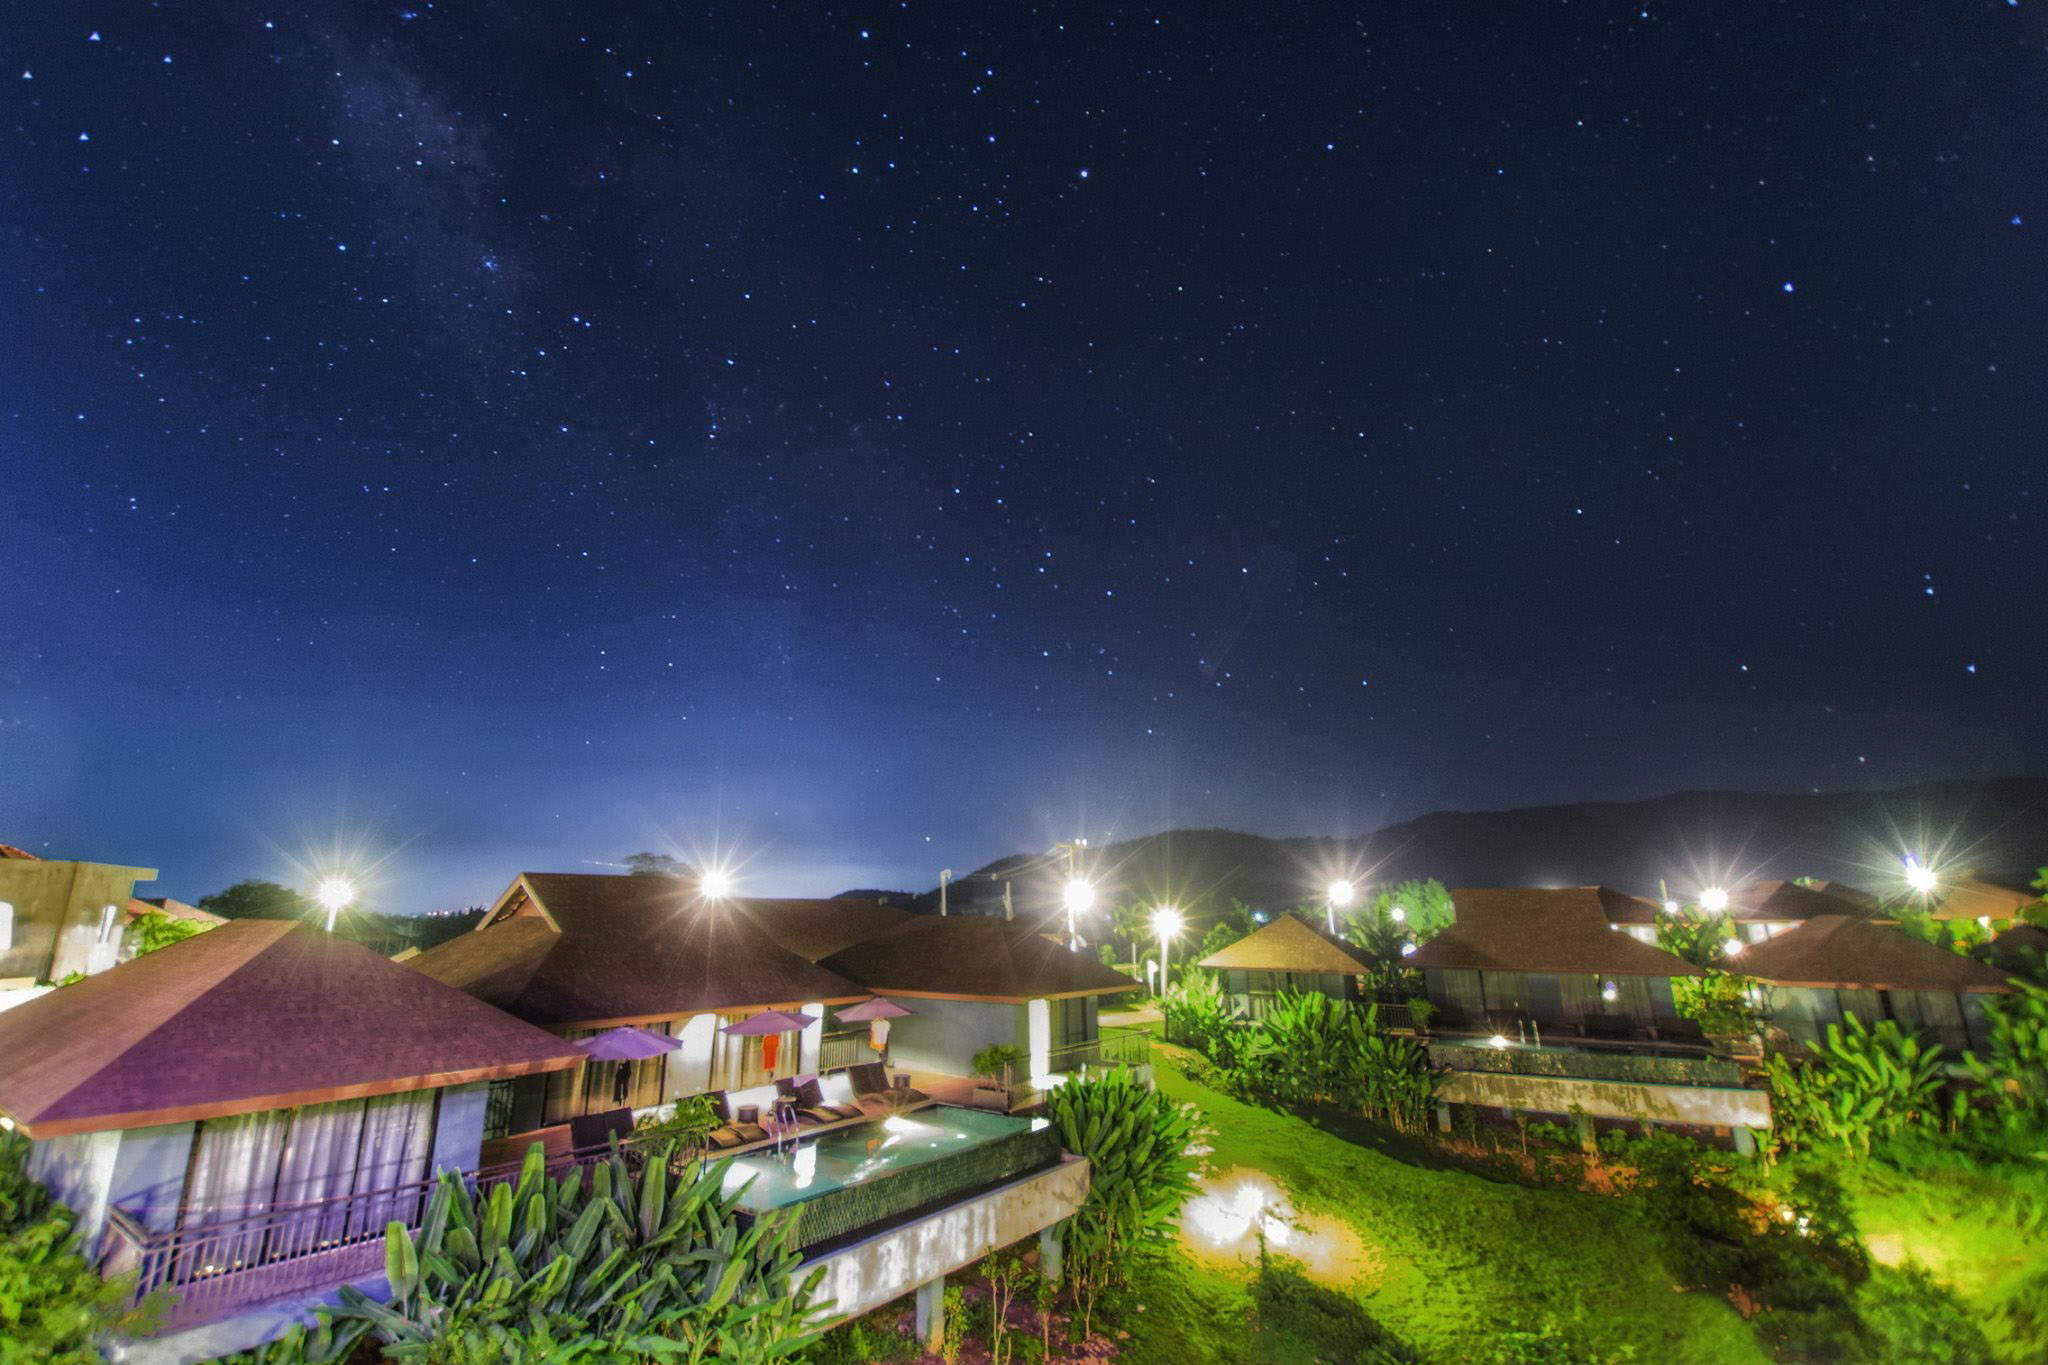 A Star Phulare Valley Chiang Rai